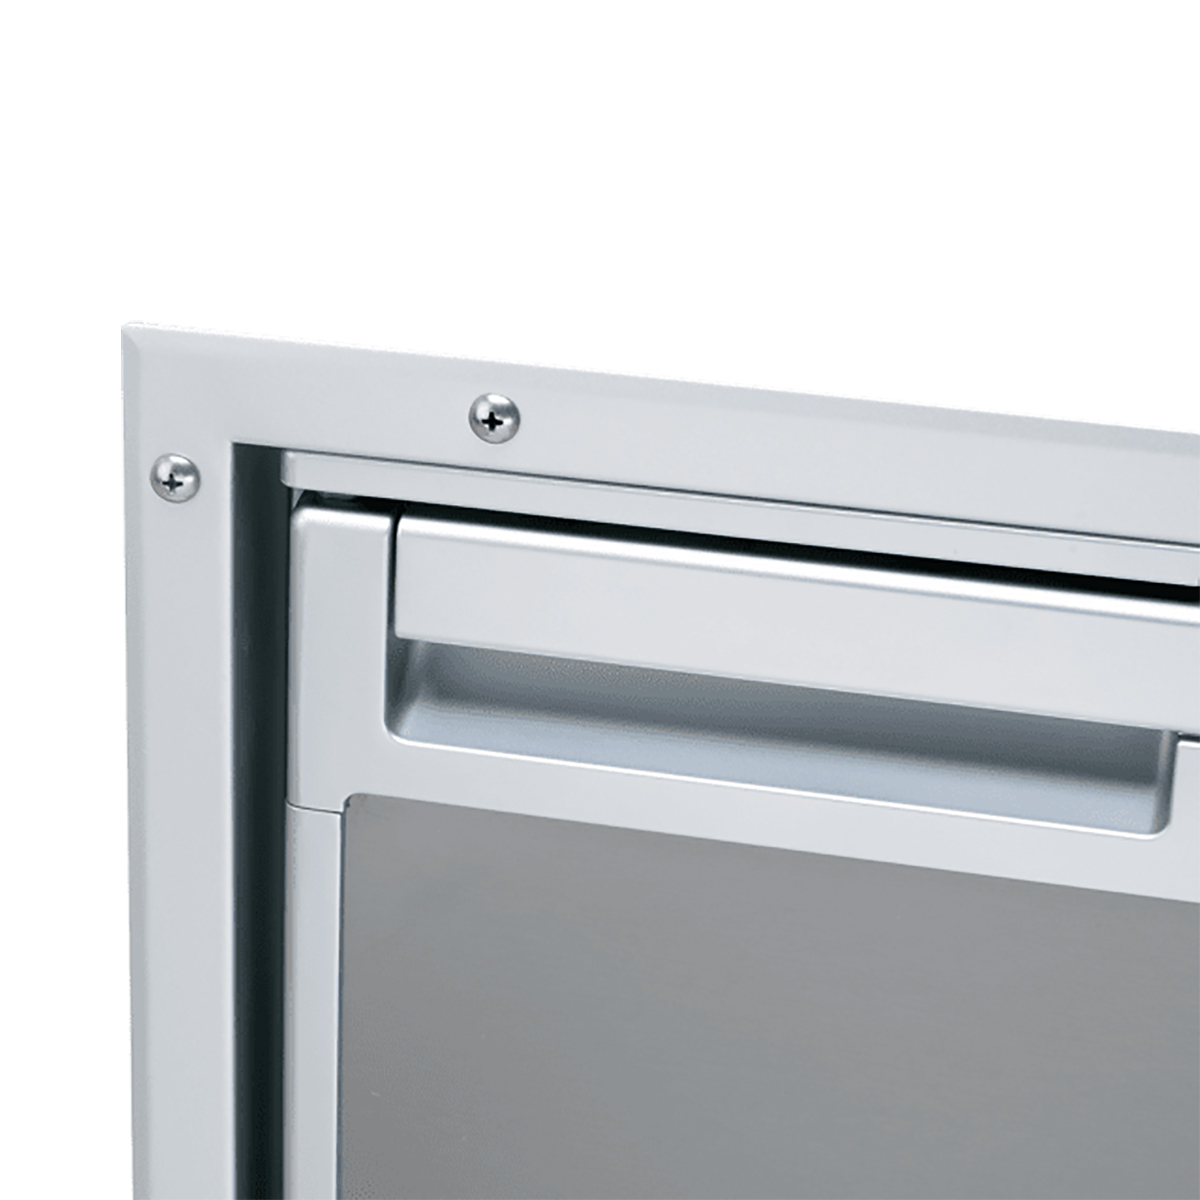 Монтажная рама с утапливаемым креплением Dometic CoolMatic CR-IFFM-140-N 9105306414 для холодильников CRX 140